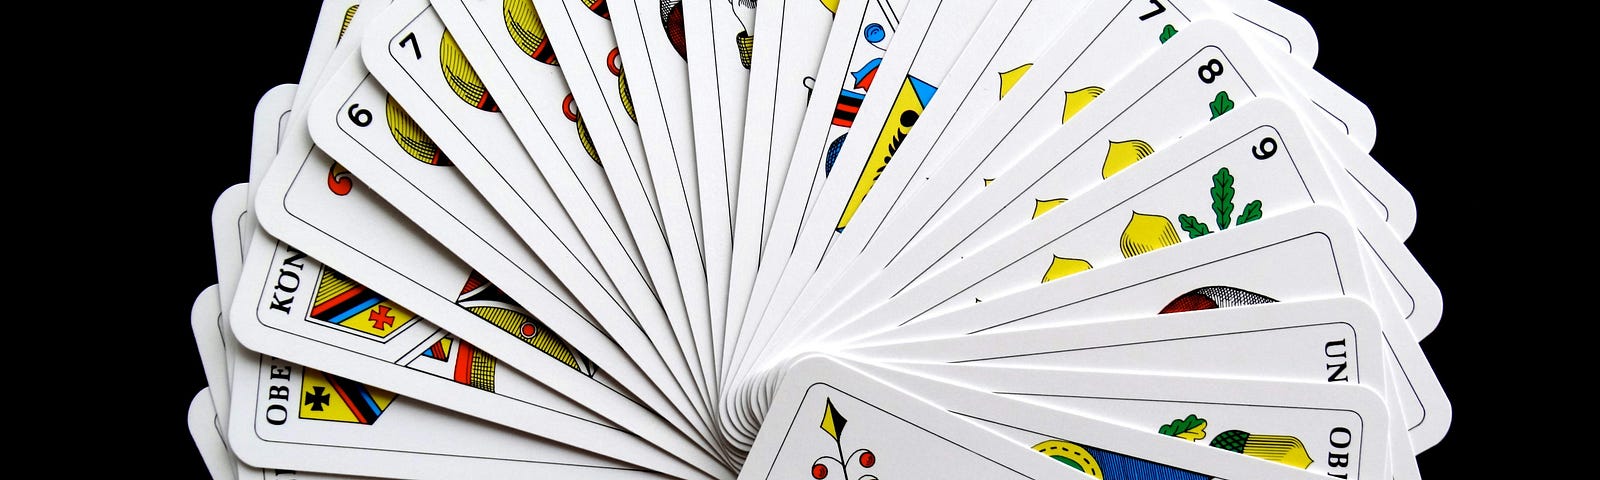 A spread suite of Tarot cards.